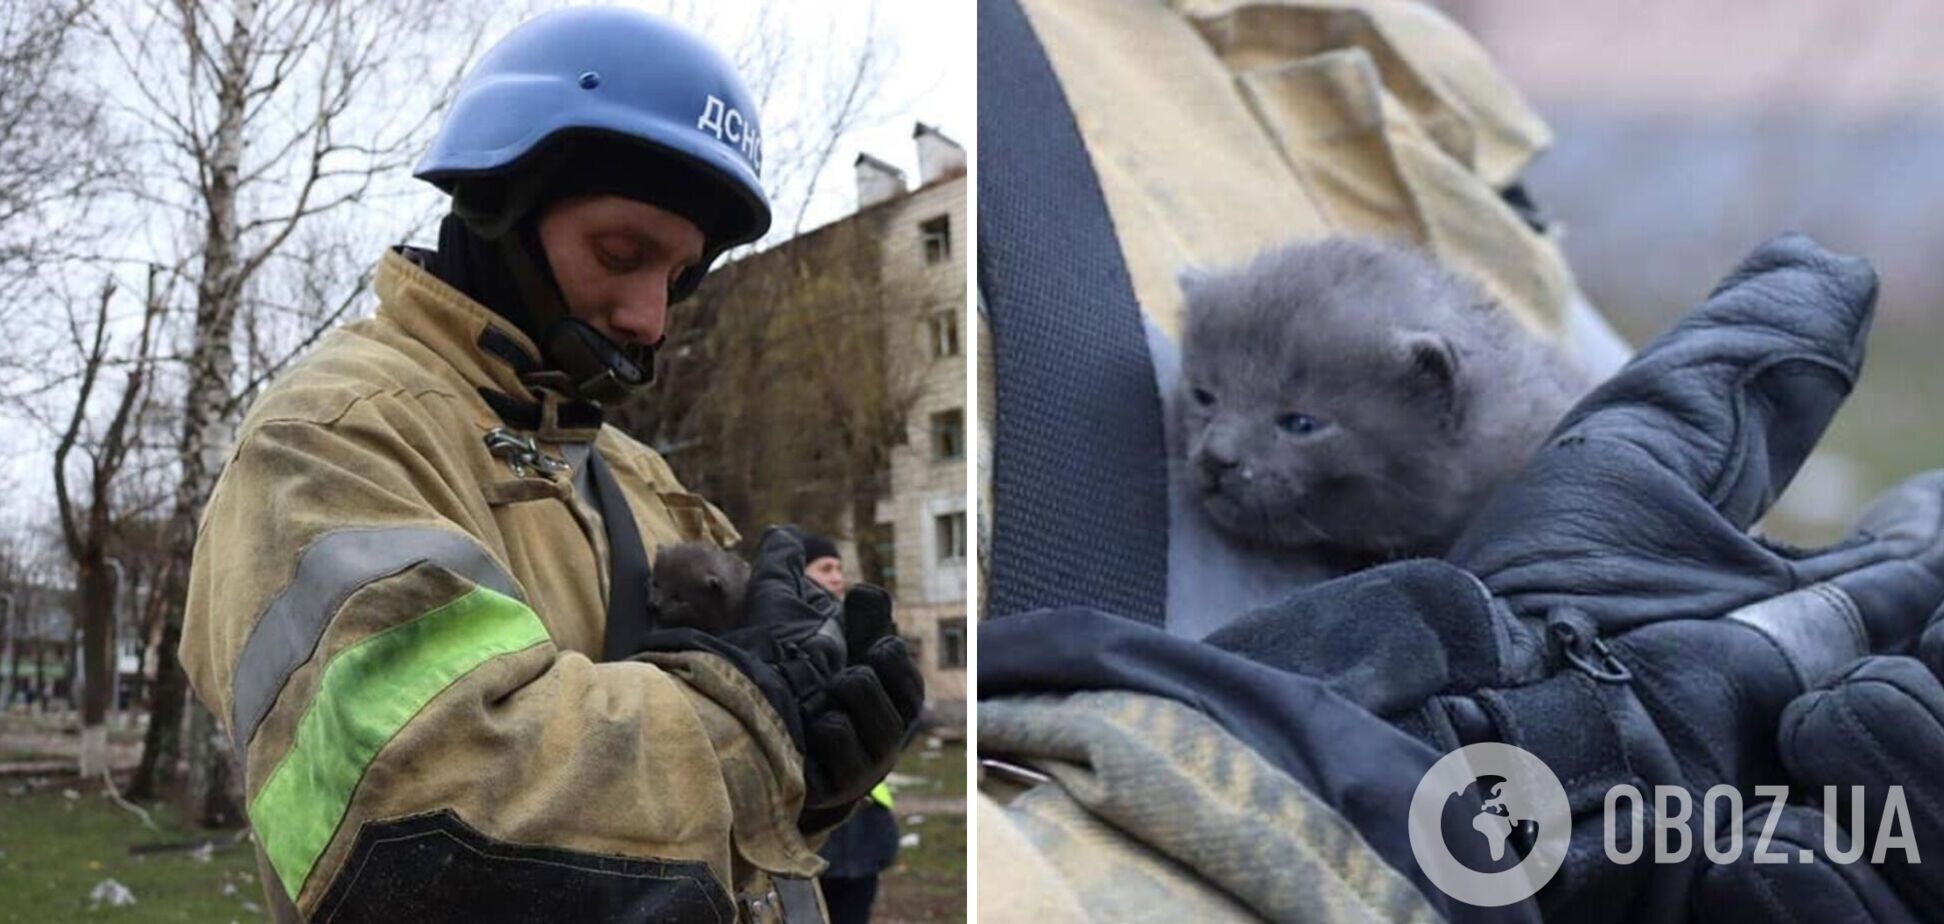 Спасатели нашли в разрушенном городе маленького котенка